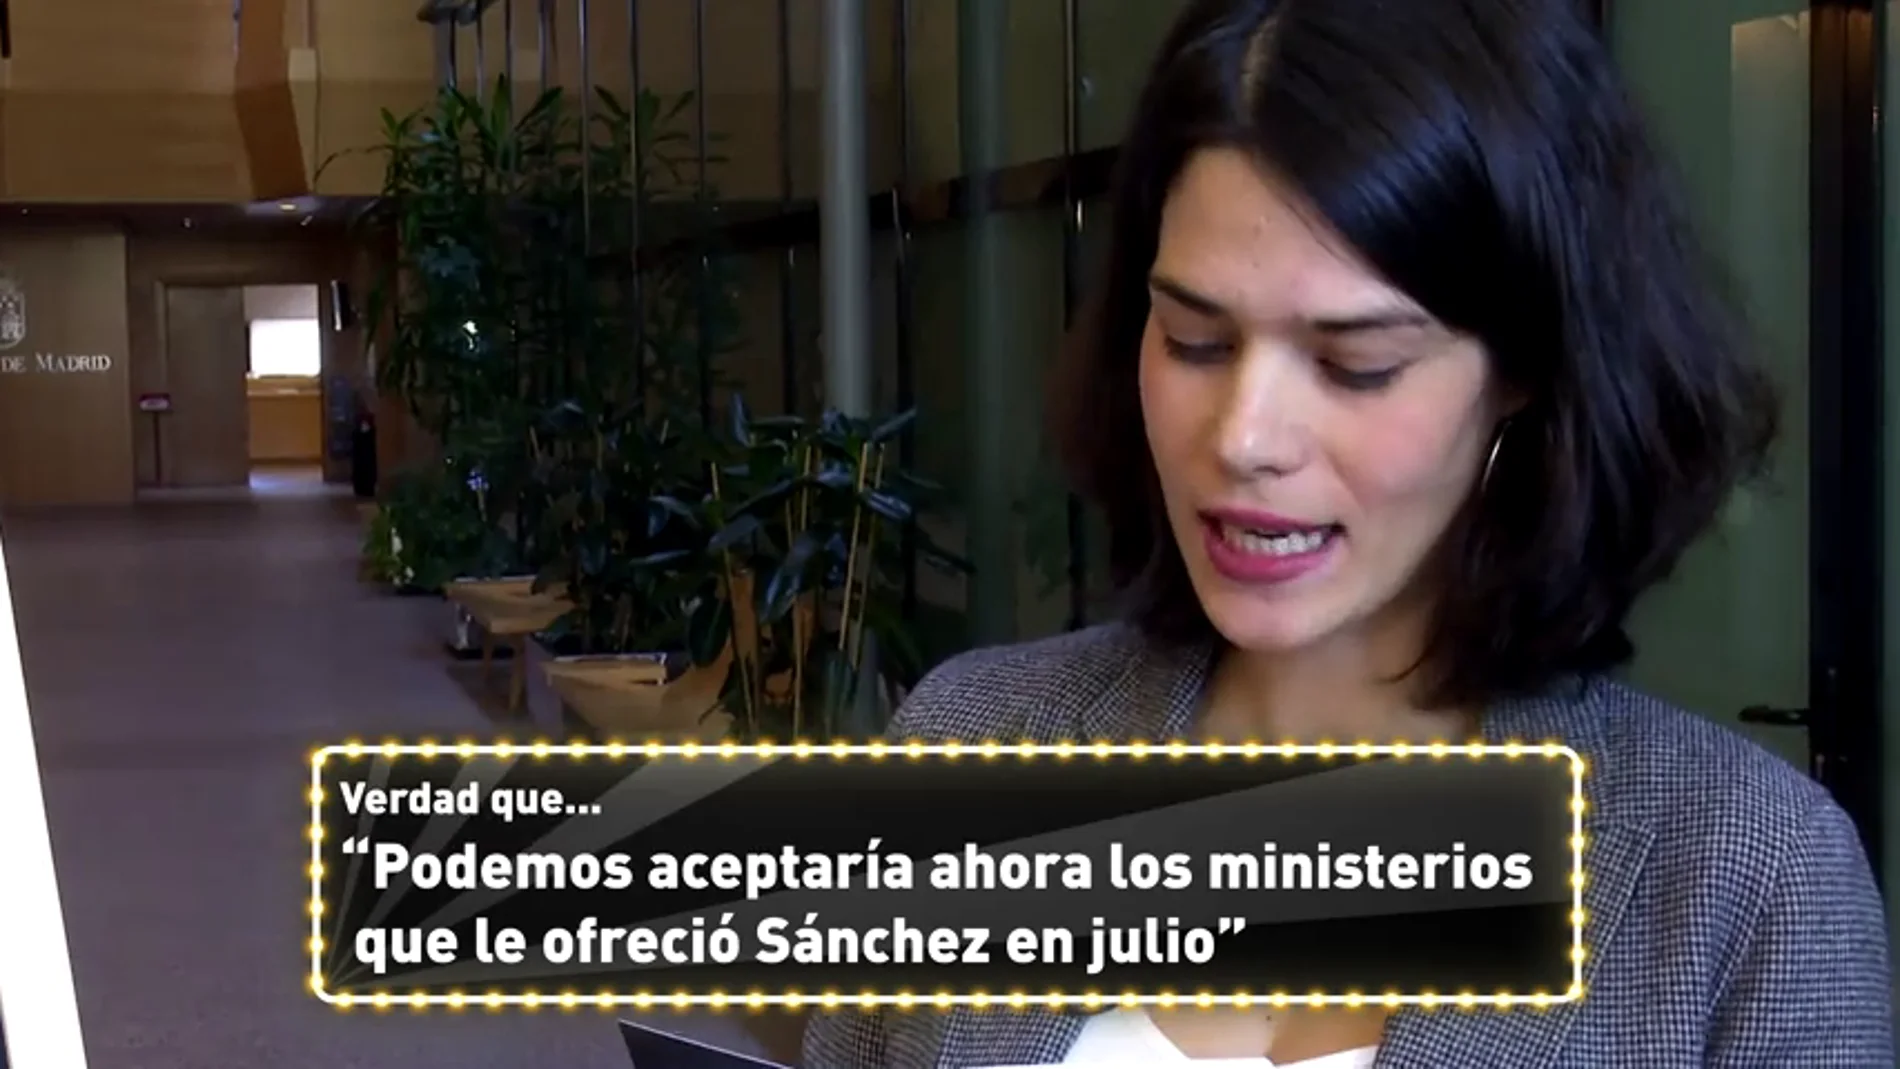 "¿Podemos aceptaría ahora los ministerios que Sánchez les ofreció en julio?: el juego de la 'verdad' a políticos de diferentes partidos